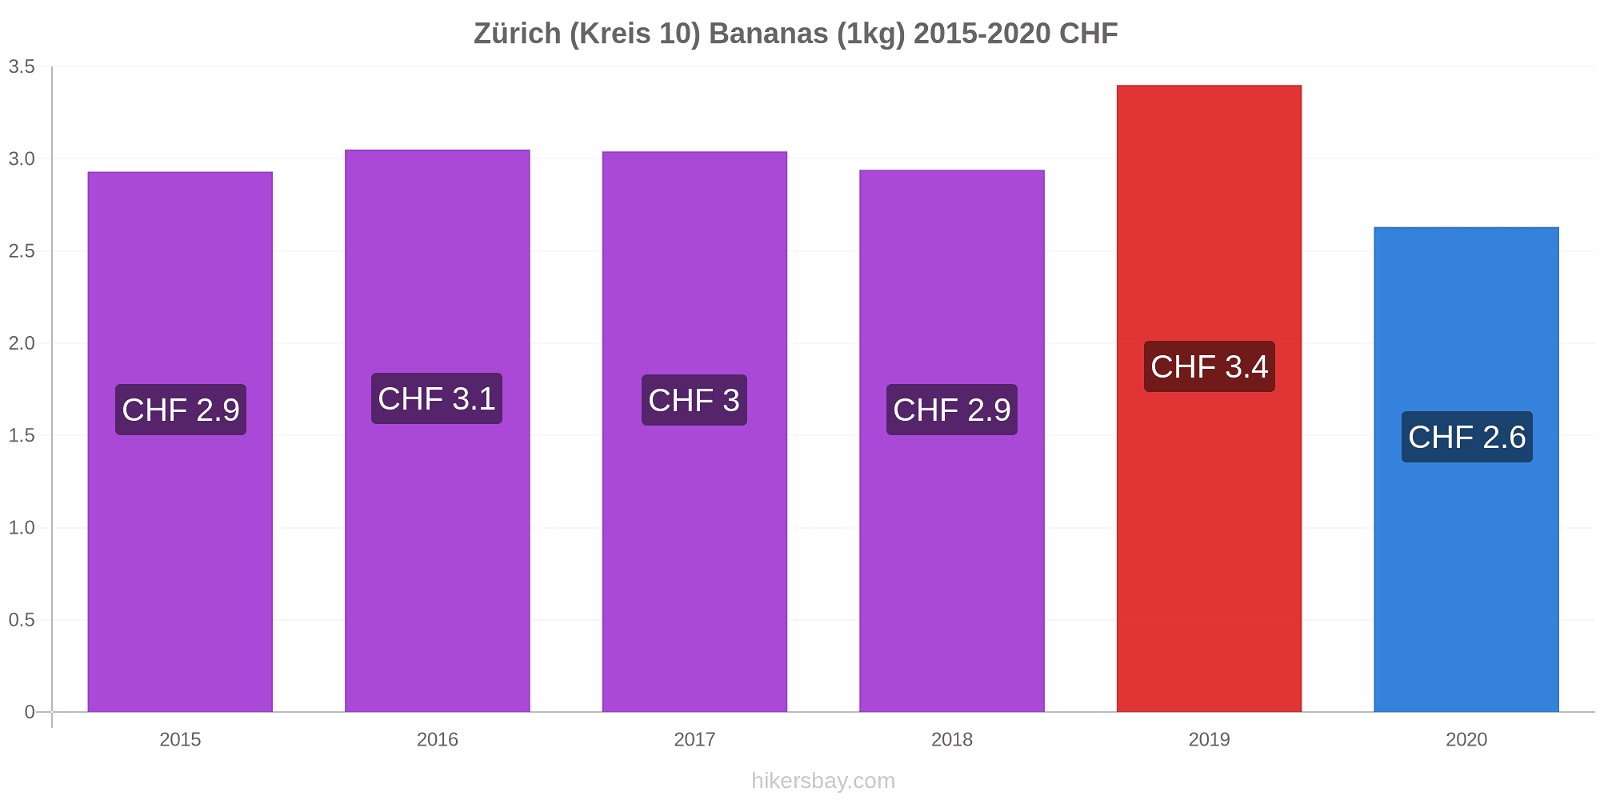 Zürich (Kreis 10) variação de preço Banana (1kg) hikersbay.com